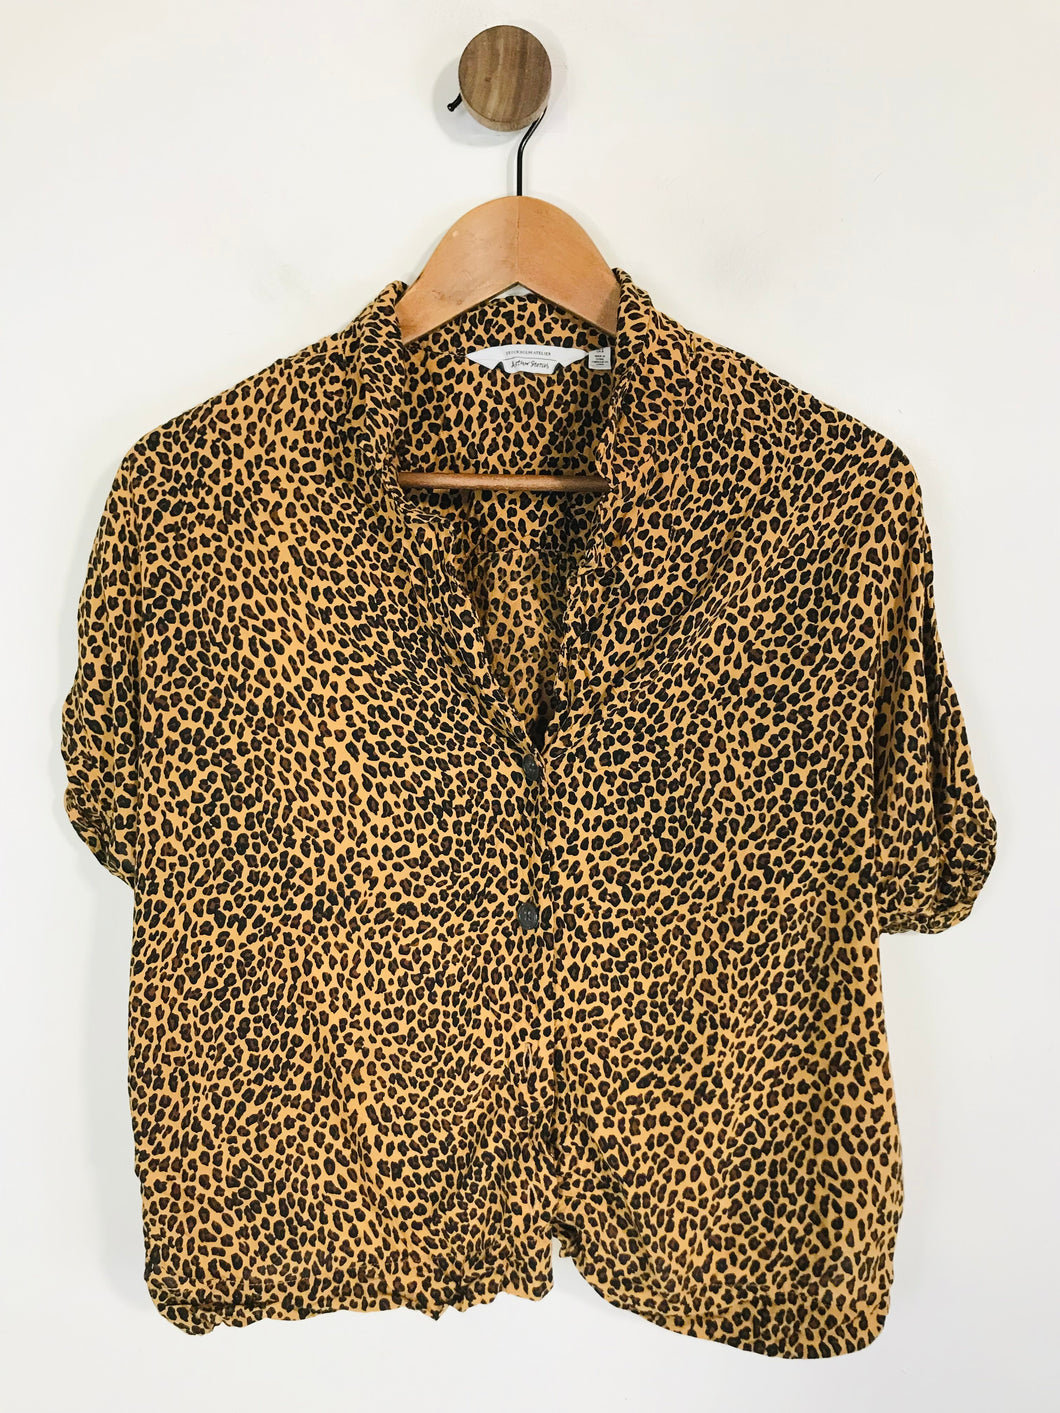 & Other Stories Women's Leopard Print Crop Button-Up Shirt | EU38 UK10 | Multicoloured